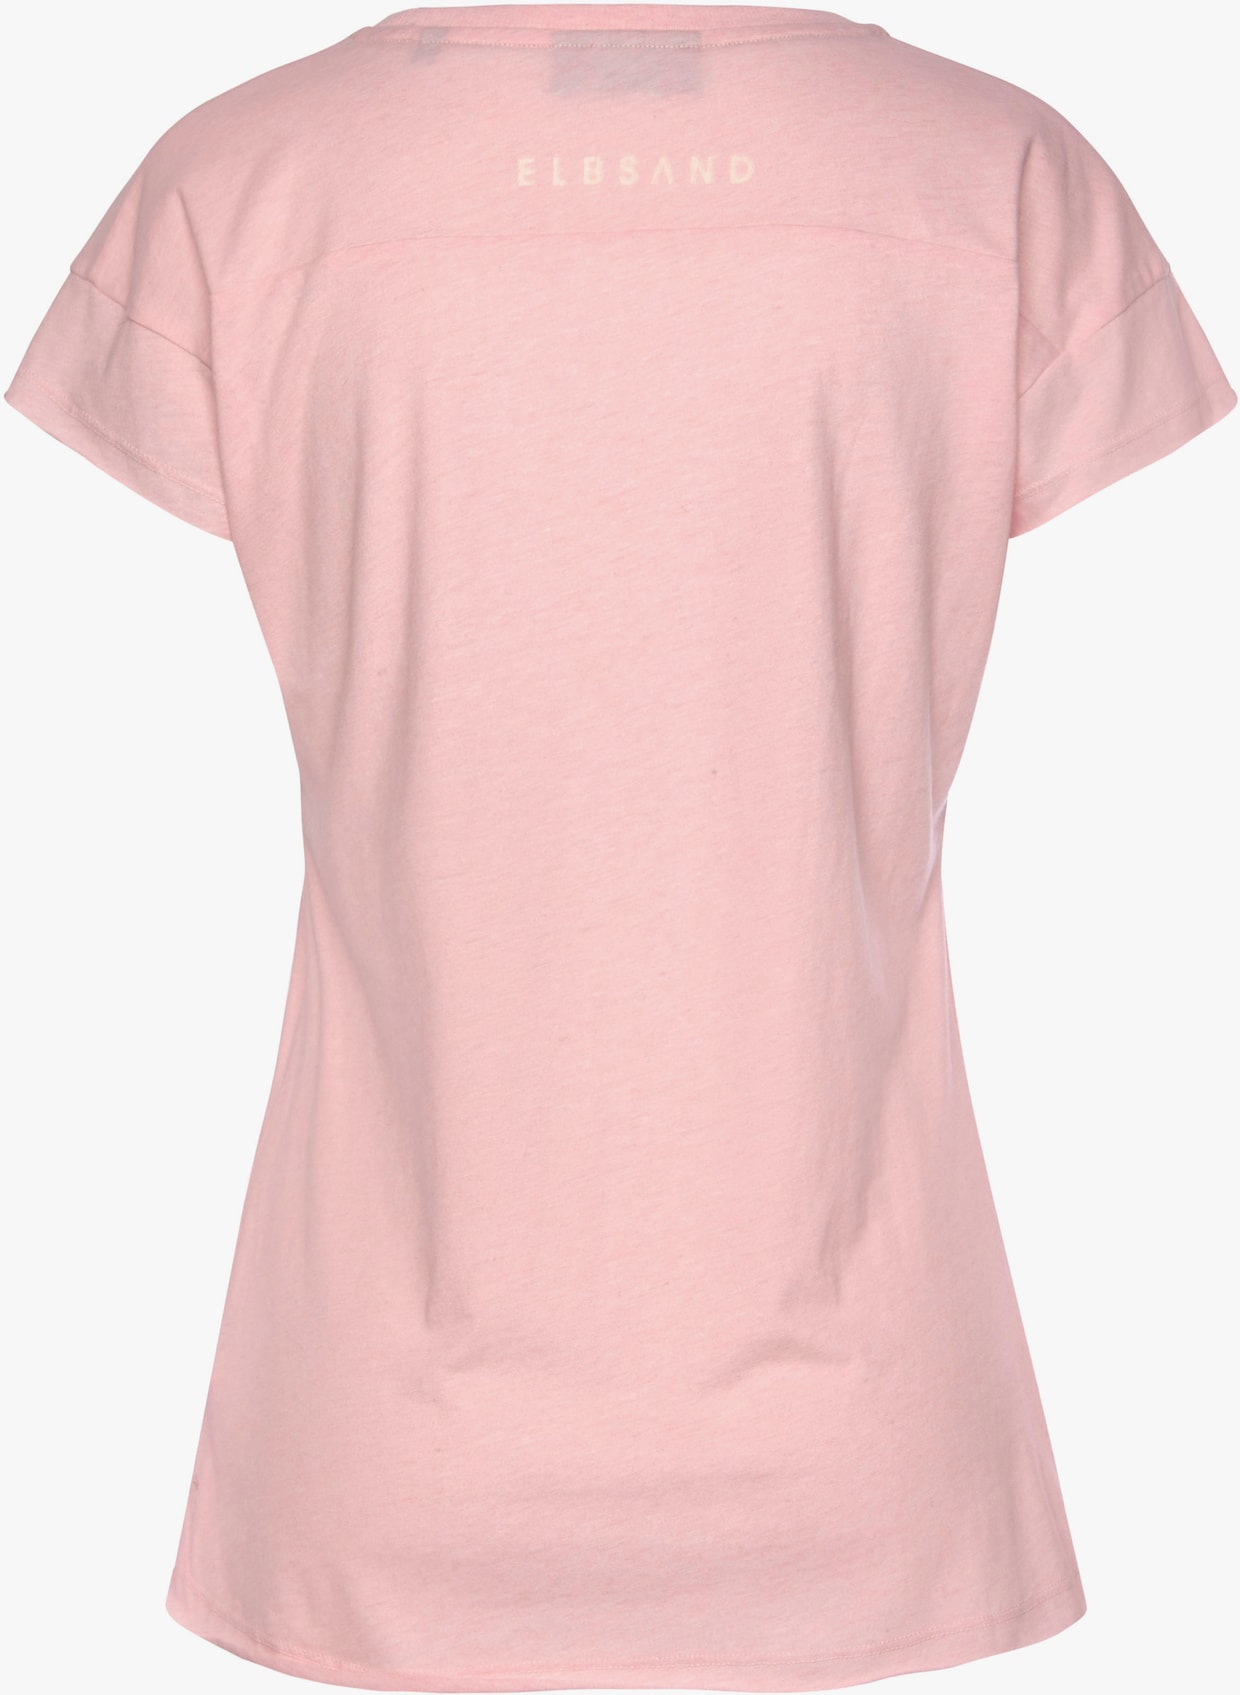 Elbsand T-Shirt - rosé meliert